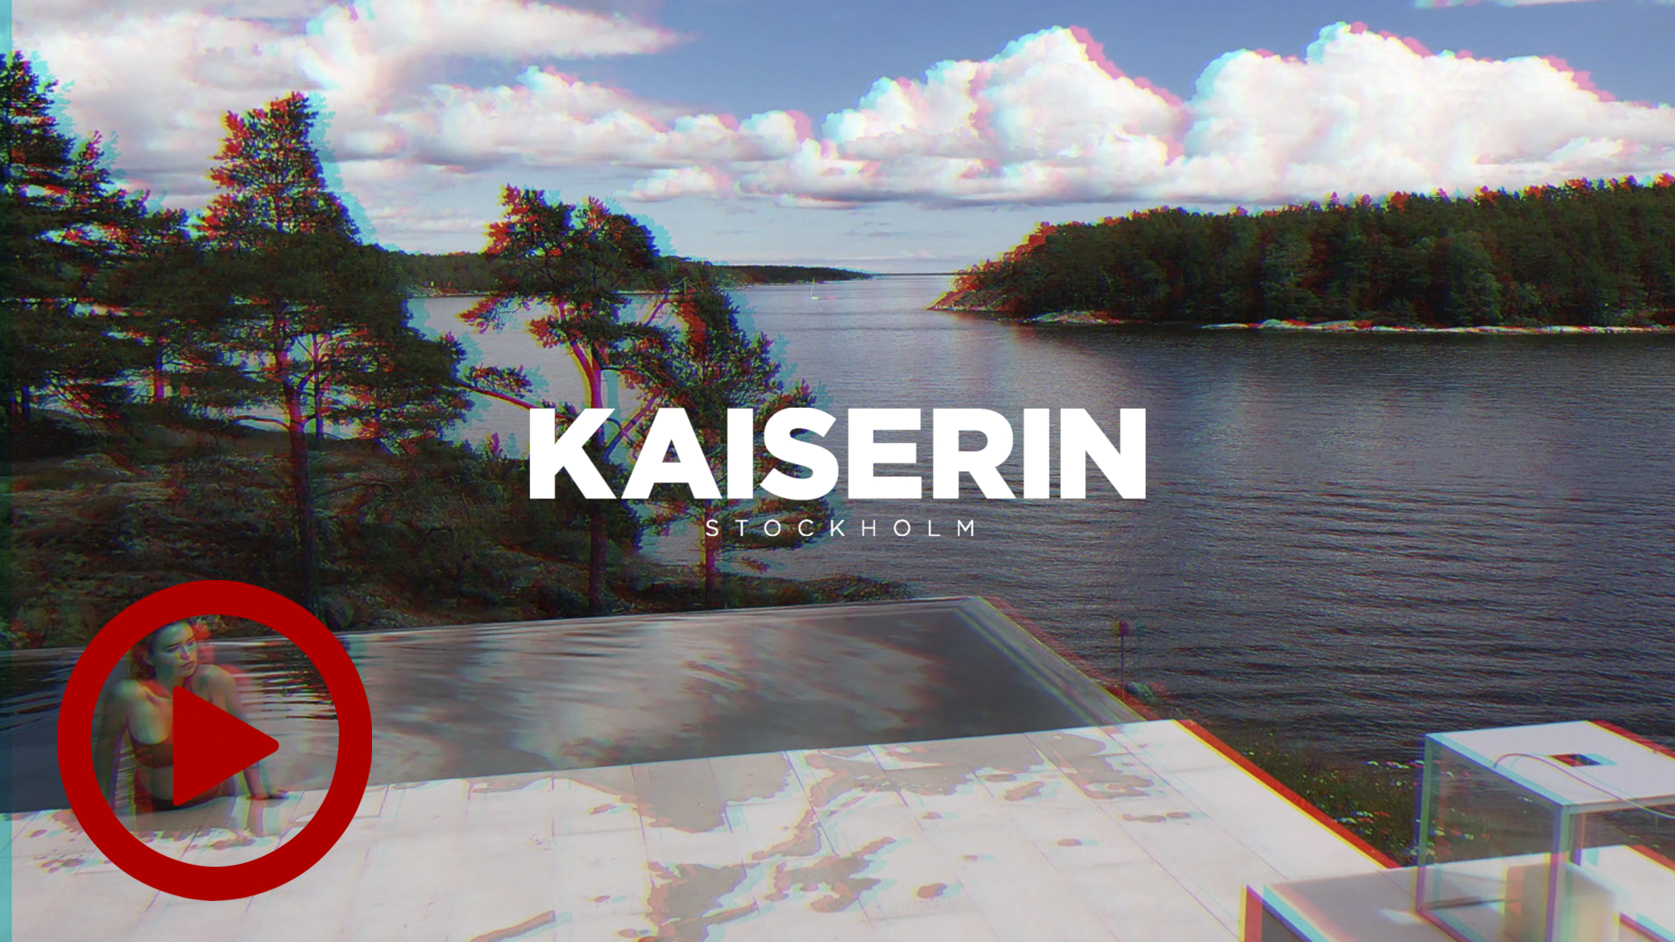 Kaiserin